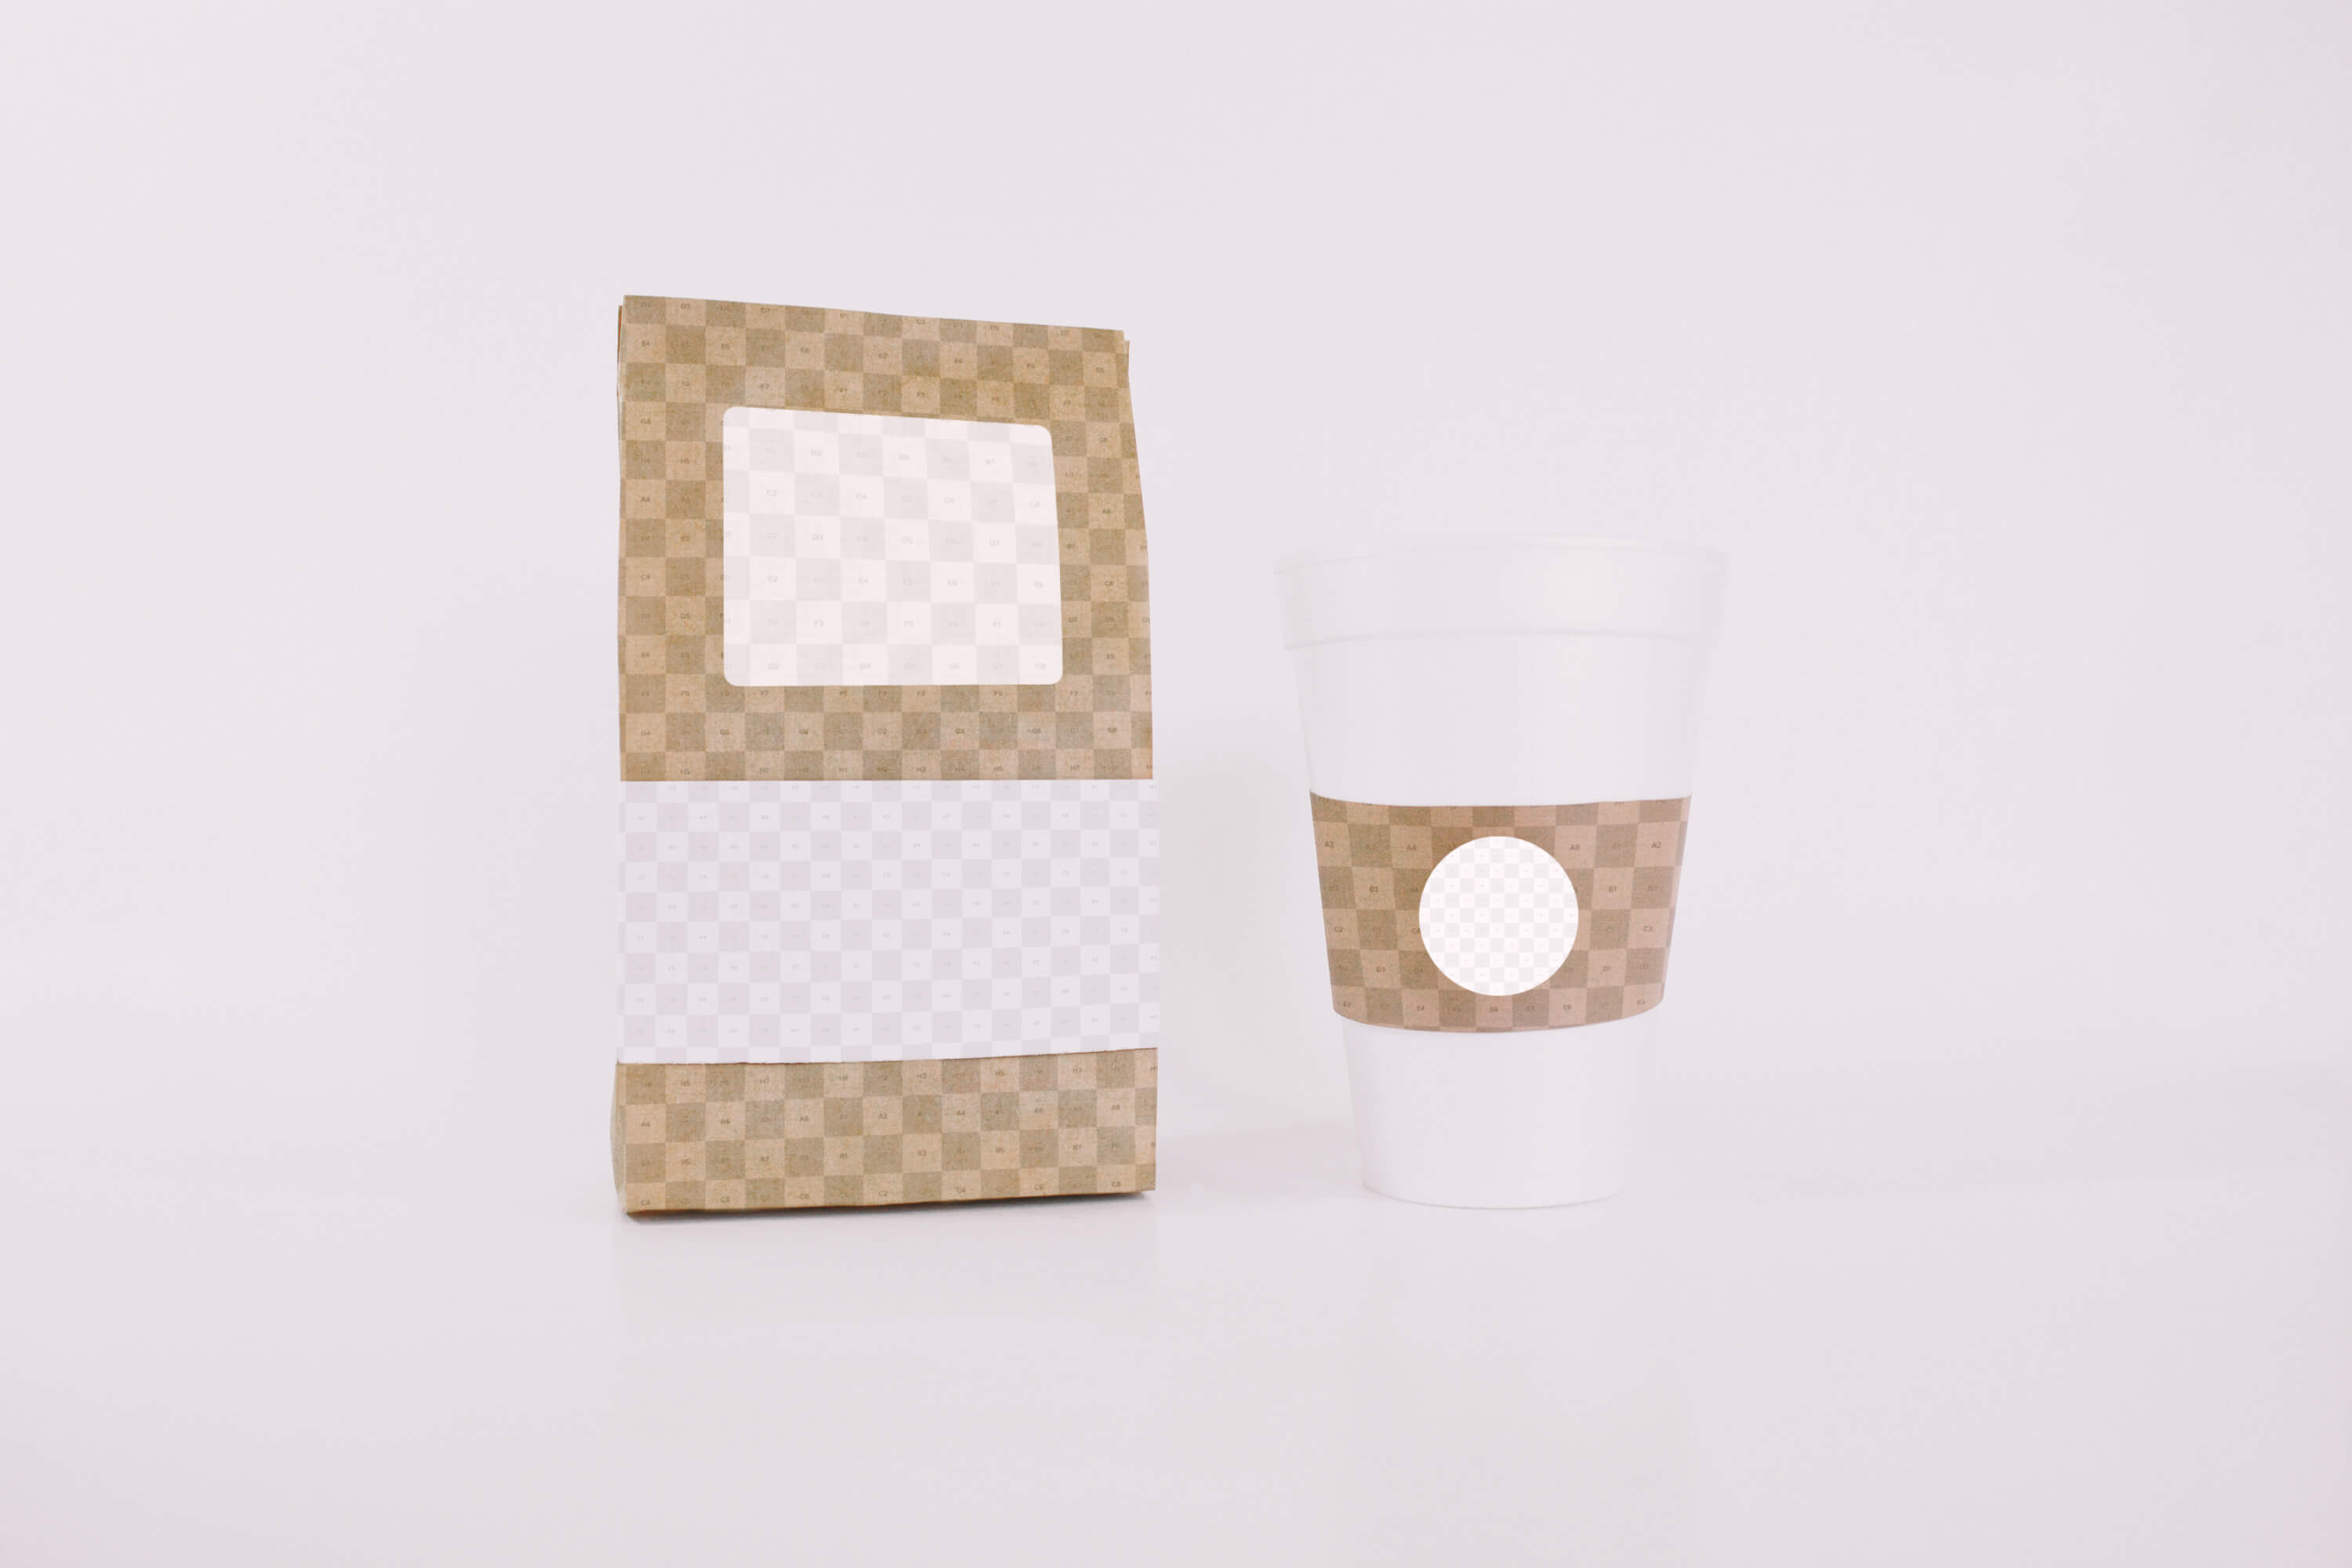 咖啡豆包装纸袋和咖啡纸杯设计样机模板素材 Coffee Bag and Cup Mockup插图(1)